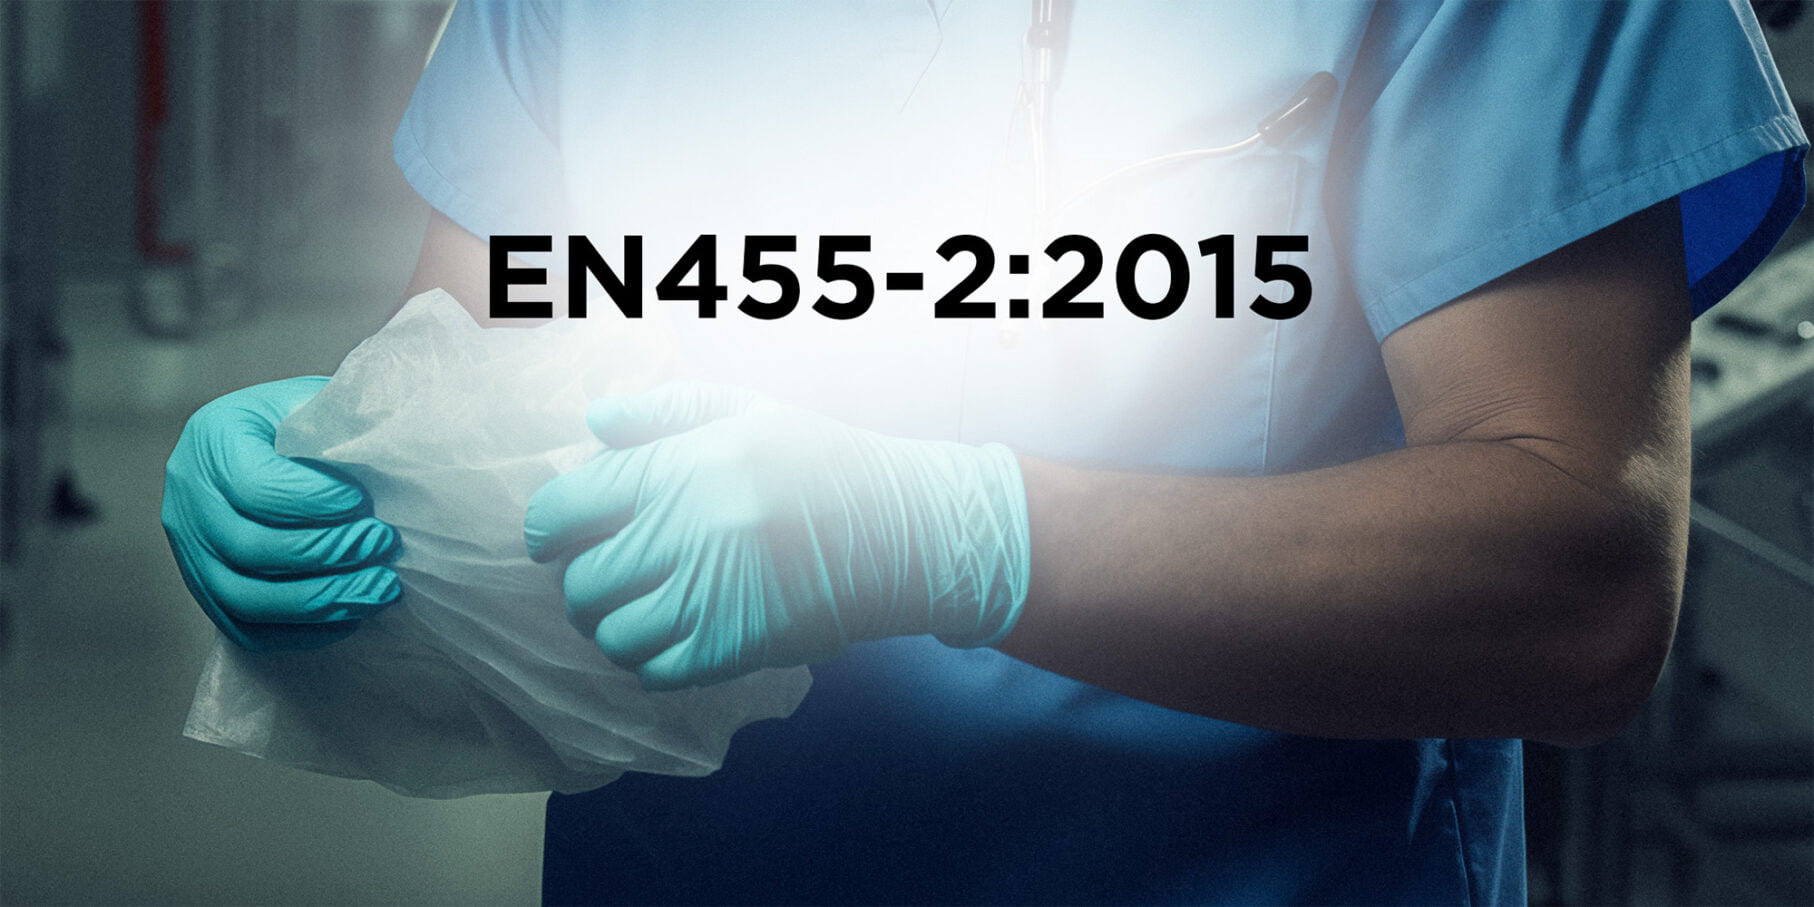 EN455-2:2015 by Eastwest Medico